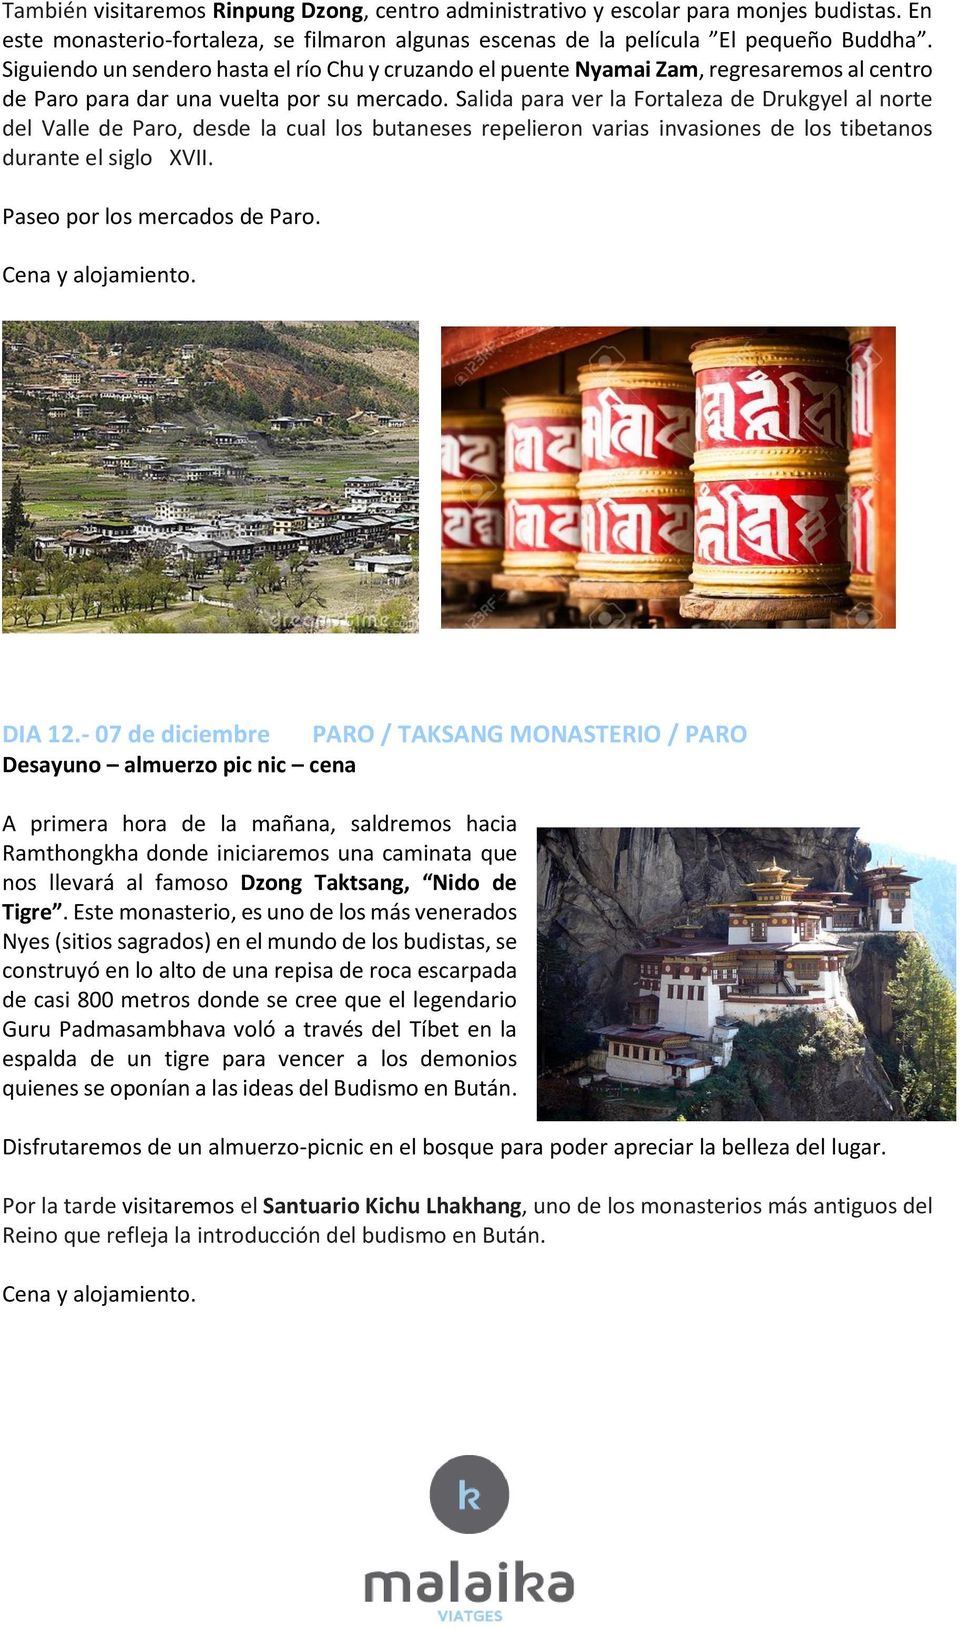 Salida para ver la Fortaleza de Drukgyel al norte del Valle de Paro, desde la cual los butaneses repelieron varias invasiones de los tibetanos durante el siglo XVII. Paseo por los mercados de Paro.